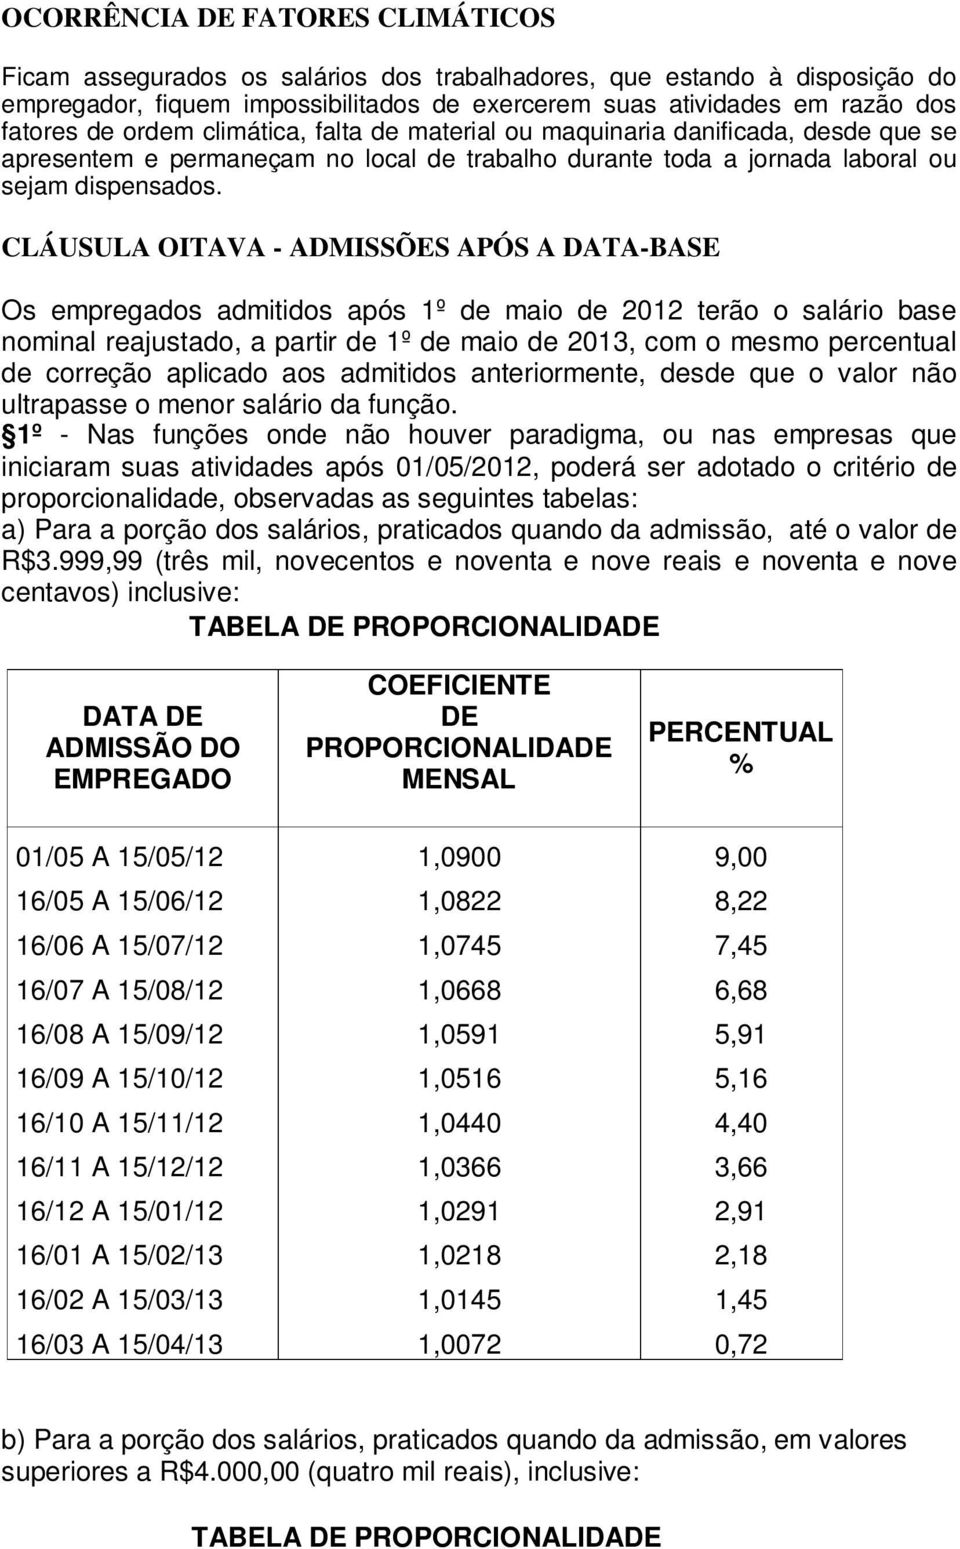 CLÁUSULA OITAVA - ADMISSÕES APÓS A DATA-BASE Os empregados admitidos após 1º de maio de 2012 terão o salário base nominal reajustado, a partir de 1º de maio de 2013, com o mesmo percentual de